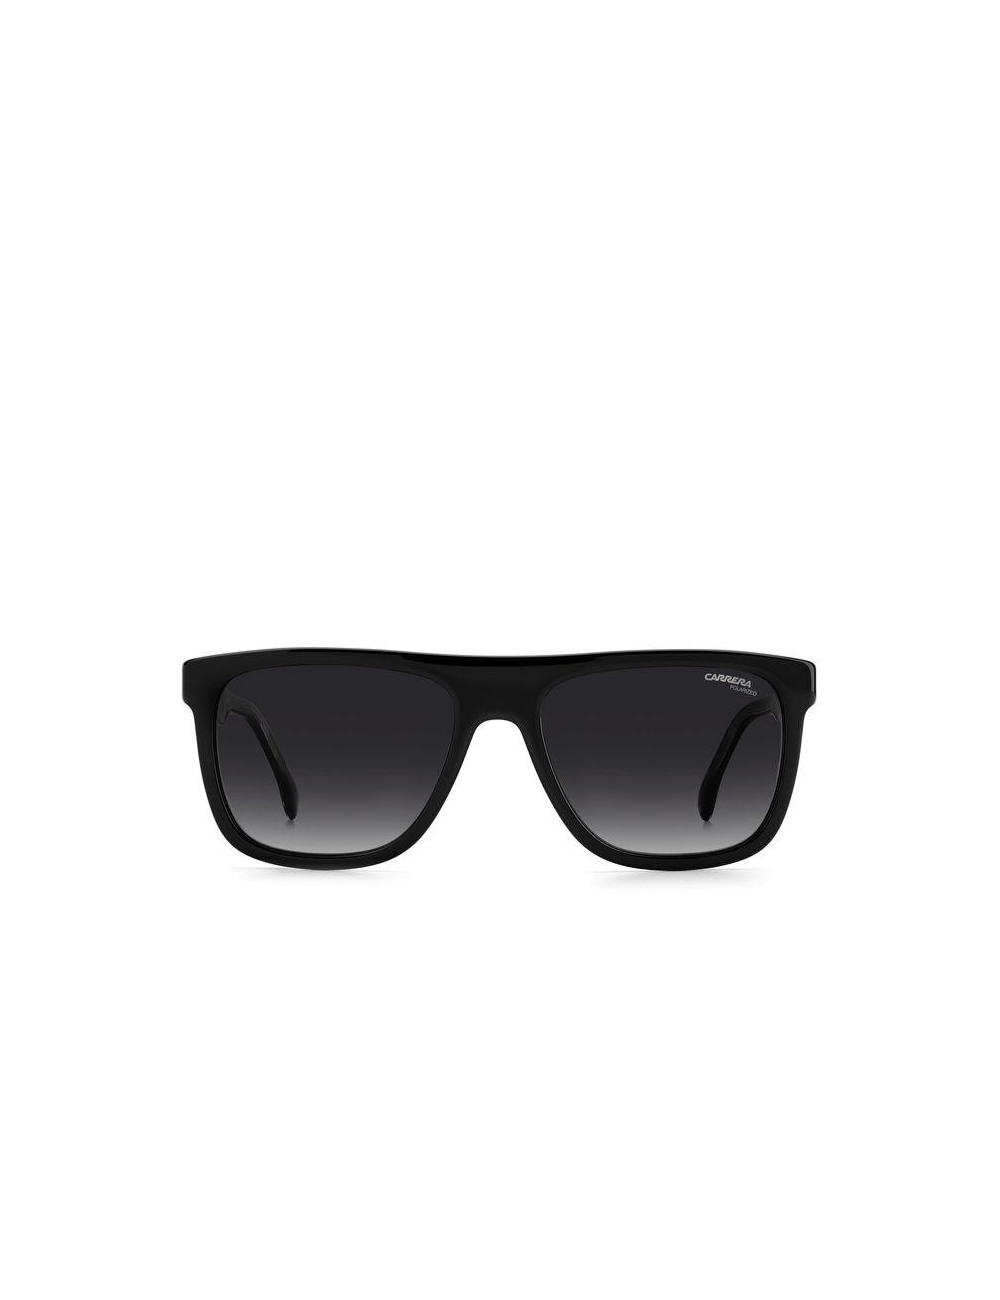 Carrera CARRERA 267/S 807 polarized sunglasses for men – Ottica Mauro